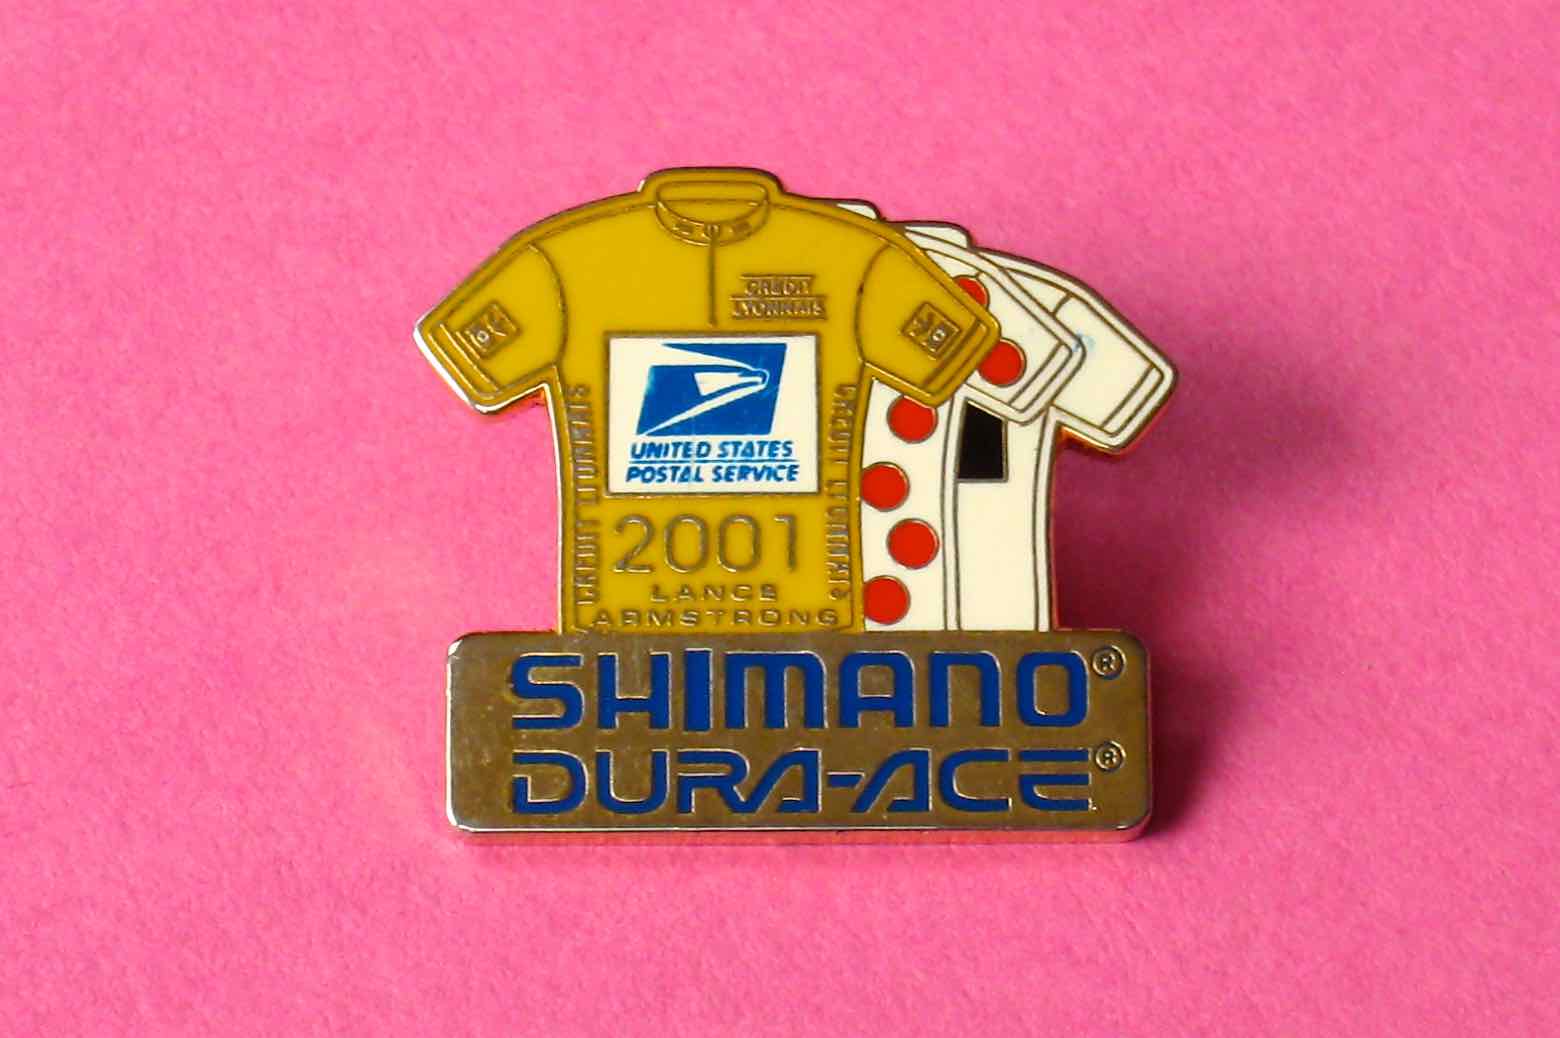 Shimano Dura-Ace Lance Armstrong pin badge - 2001 main image